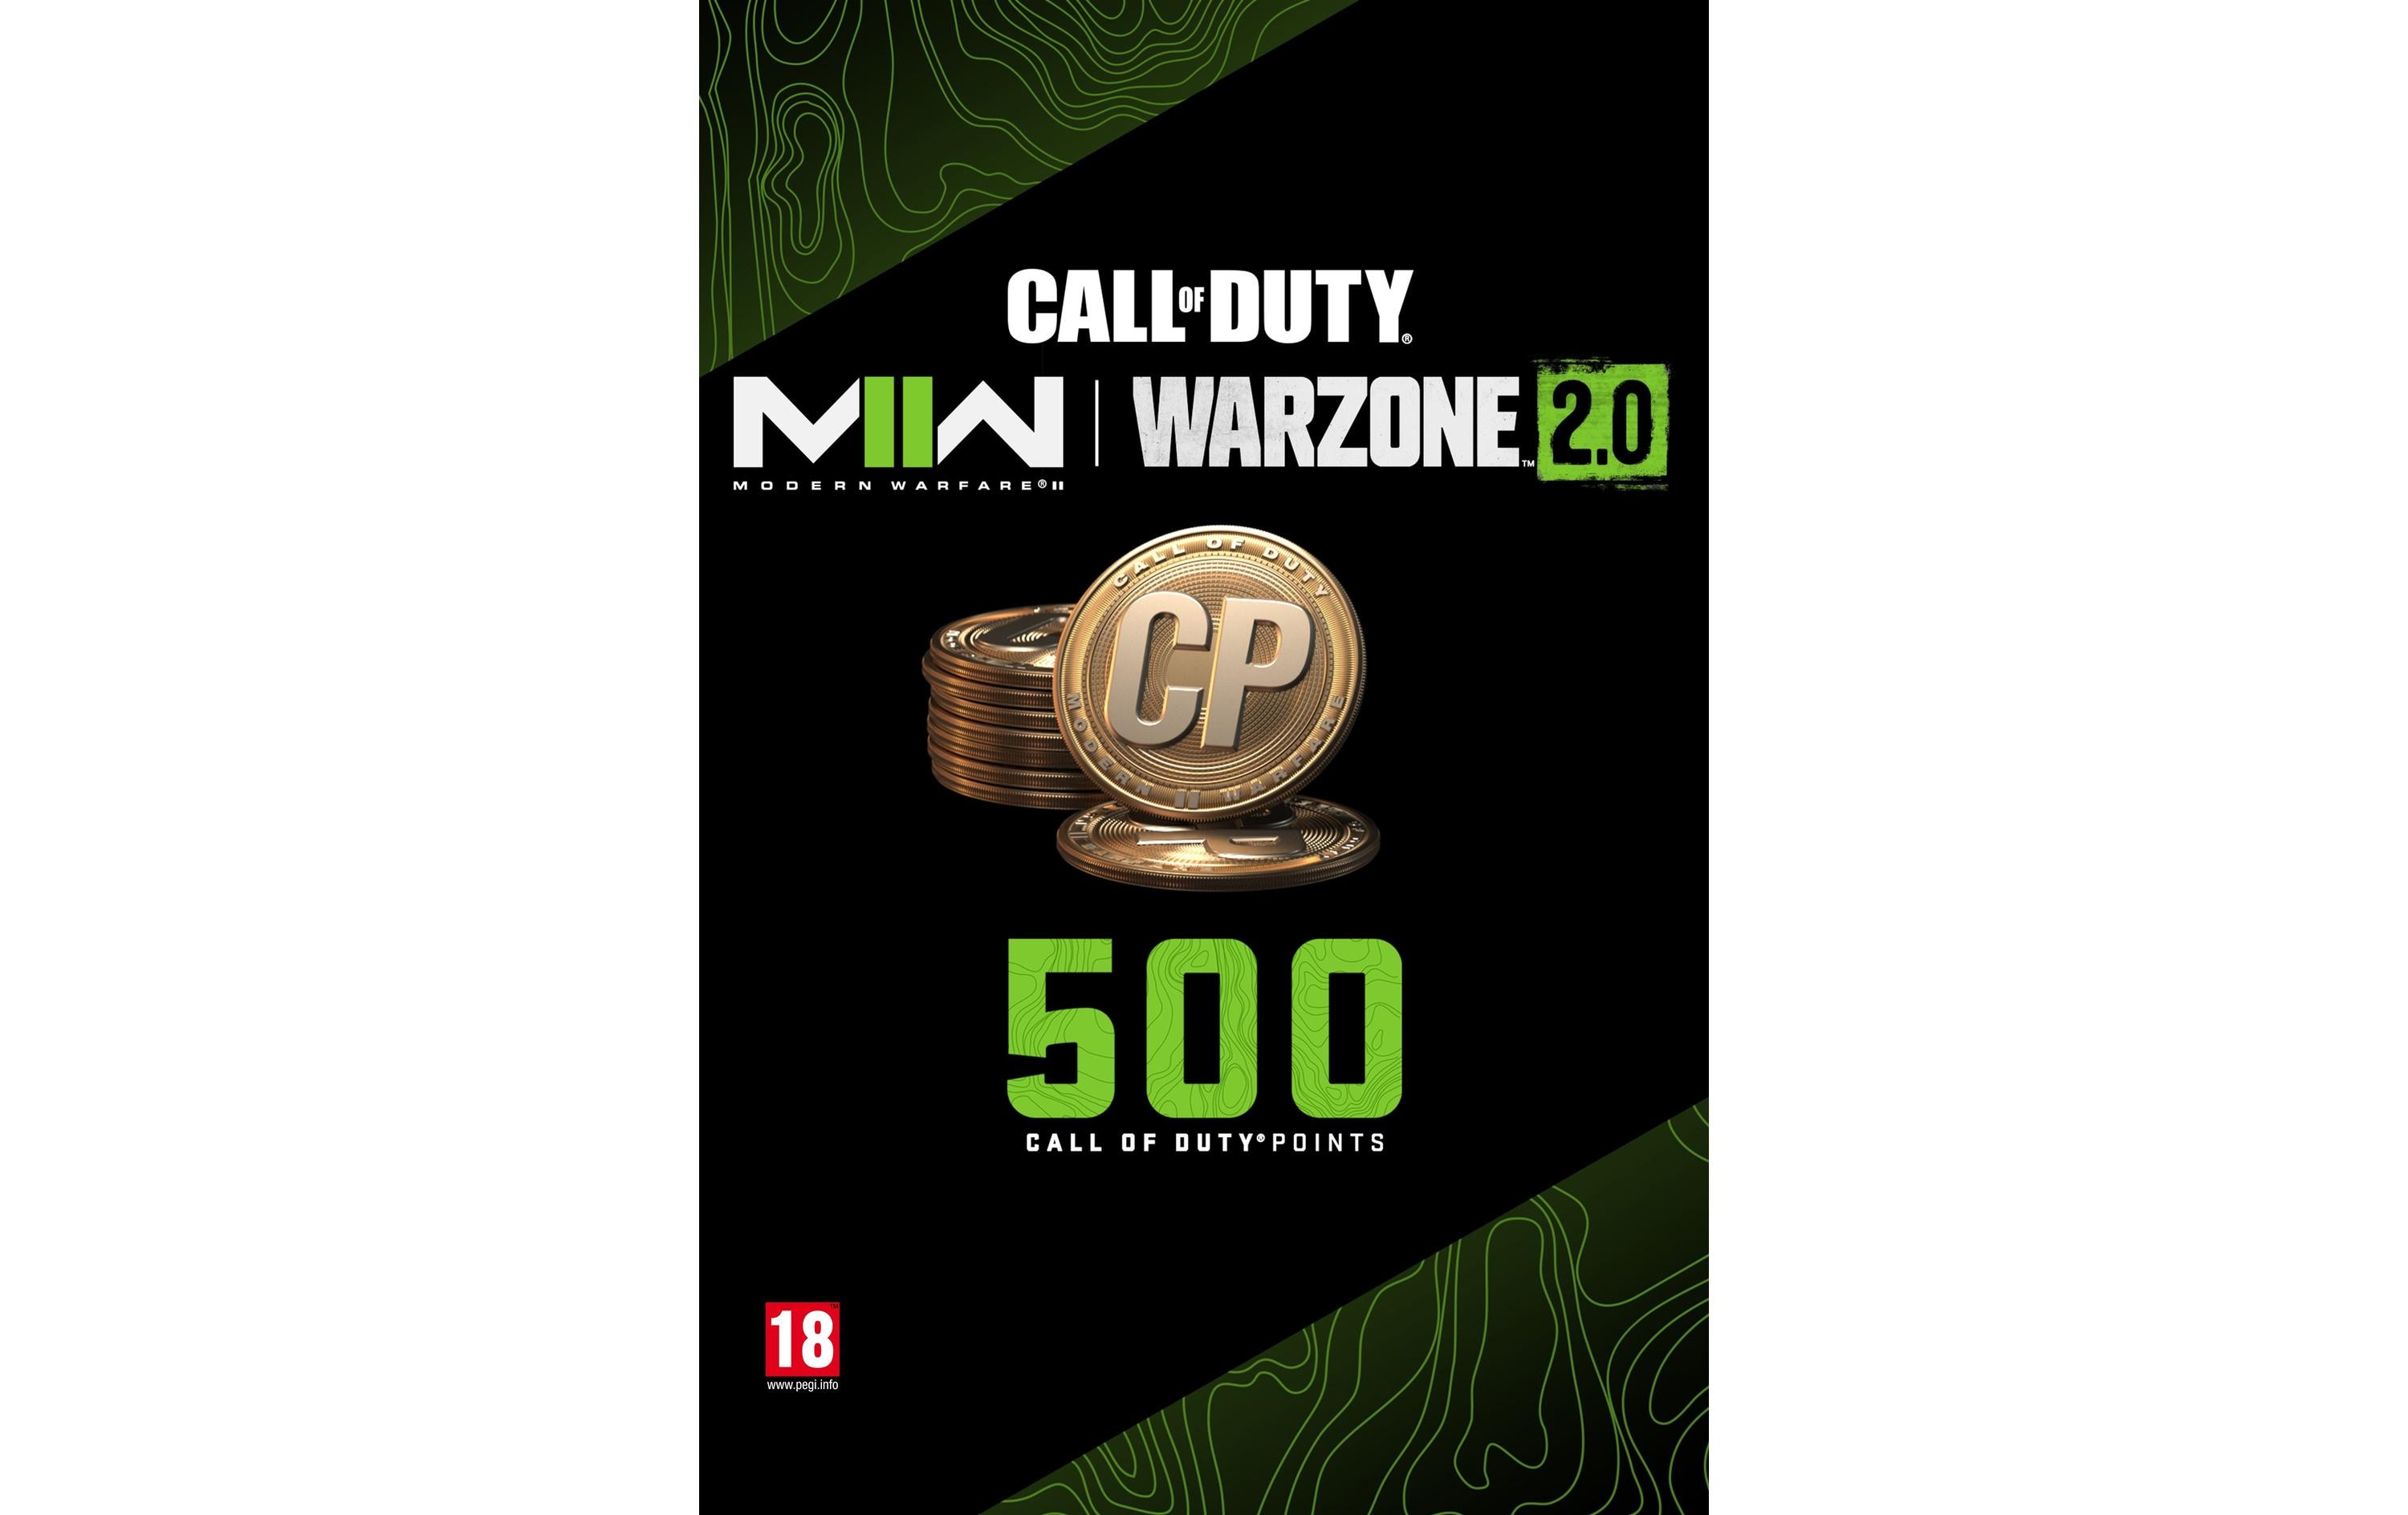 Microsoft 500 COD MW II | Warzone 2.0 Points